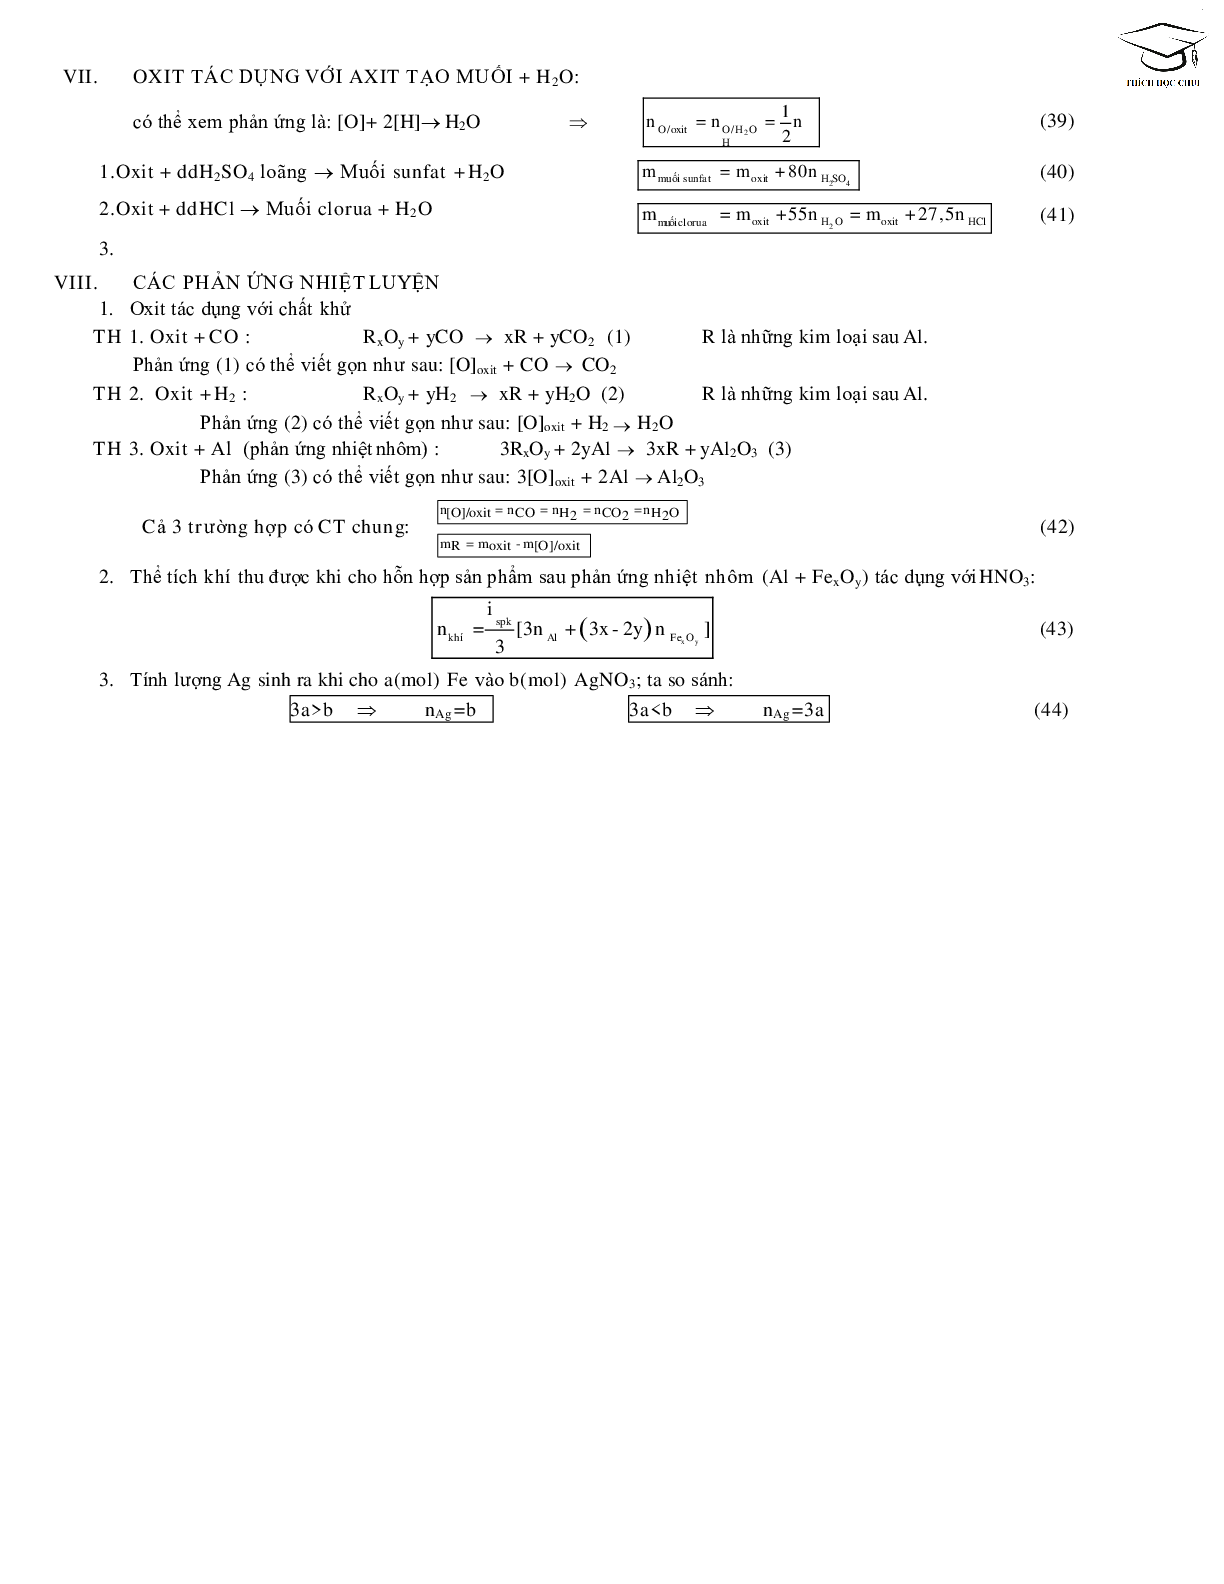 68 công thức giải nhanh bài tập trắc nghiệm môn hóa học lớp 12 (trang 6)